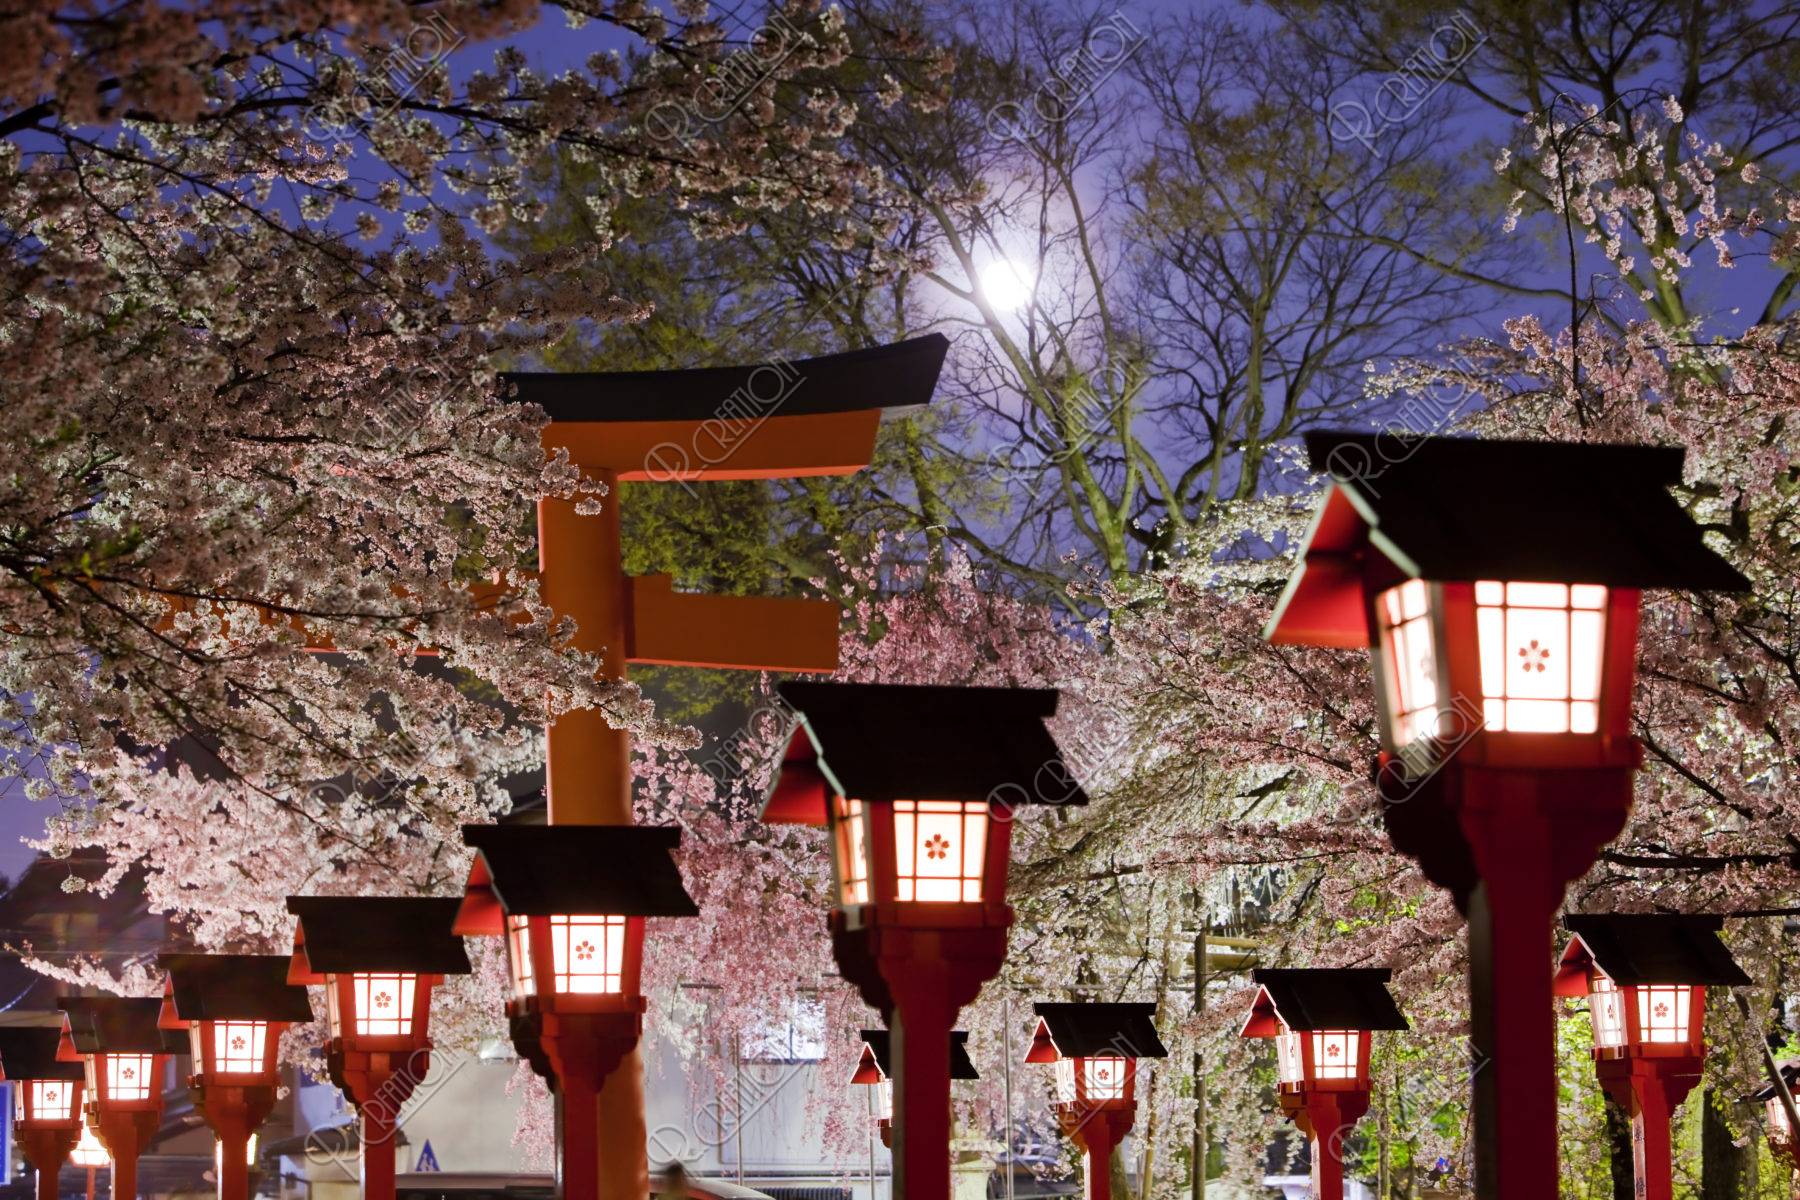 平野神社の夜桜と月 ストックフォト アールクリエーション